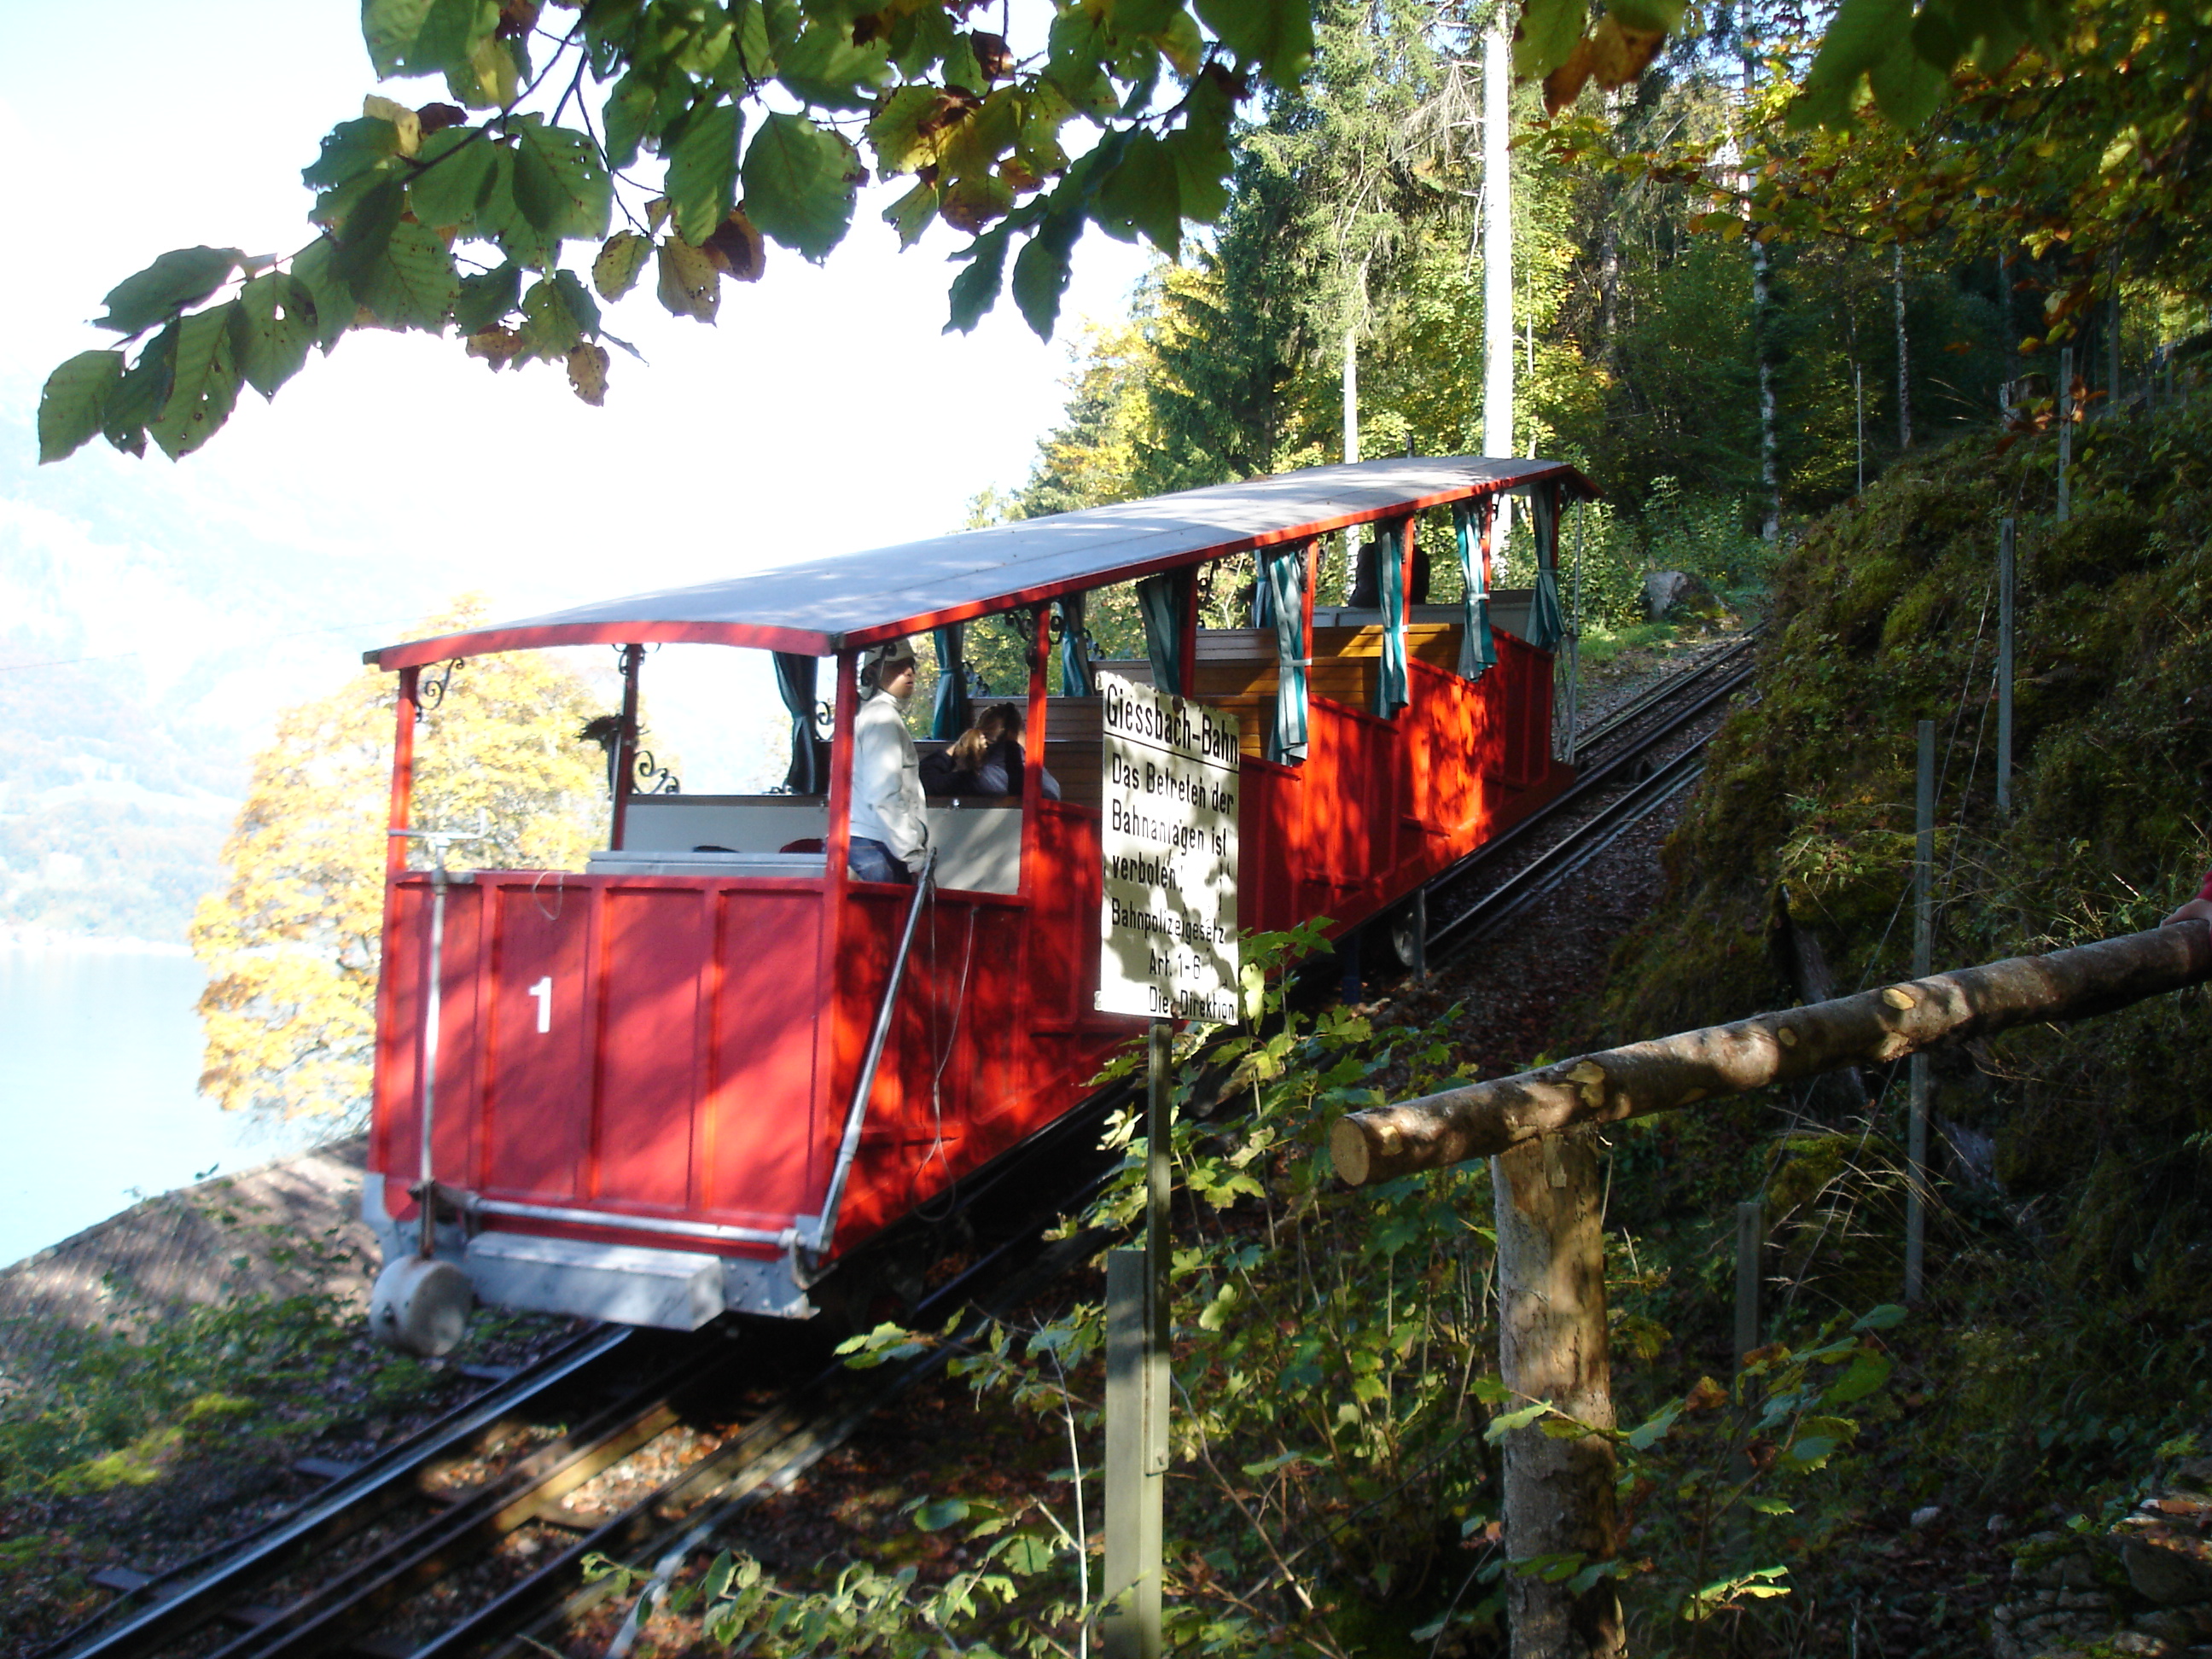  Bij de watervallen het Grandhotel vindt u tevens de oudste kabelspoorbaan van Europa. Deze spoorbaan gaat van de aanlegplaats in Giessbach direct naar het hotel en naar de imposante waterval.